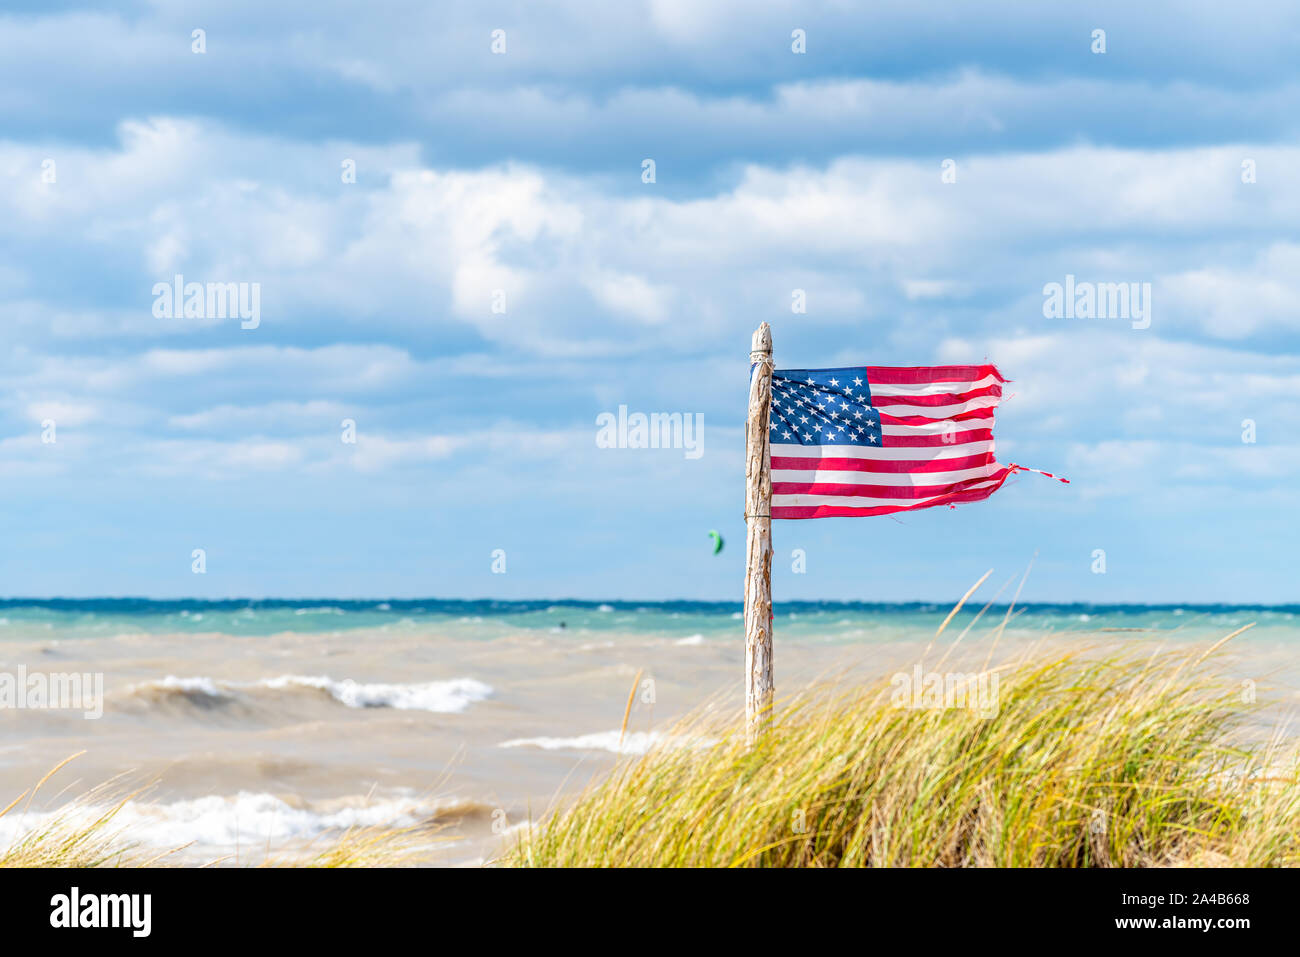 Ein Wind geblasen, leicht ramponiert US-Flagge an einem alten hölzernen Fahnenmast auf dem Michigan See Strand mit Kite Surfer im Hintergrund. Stockfoto